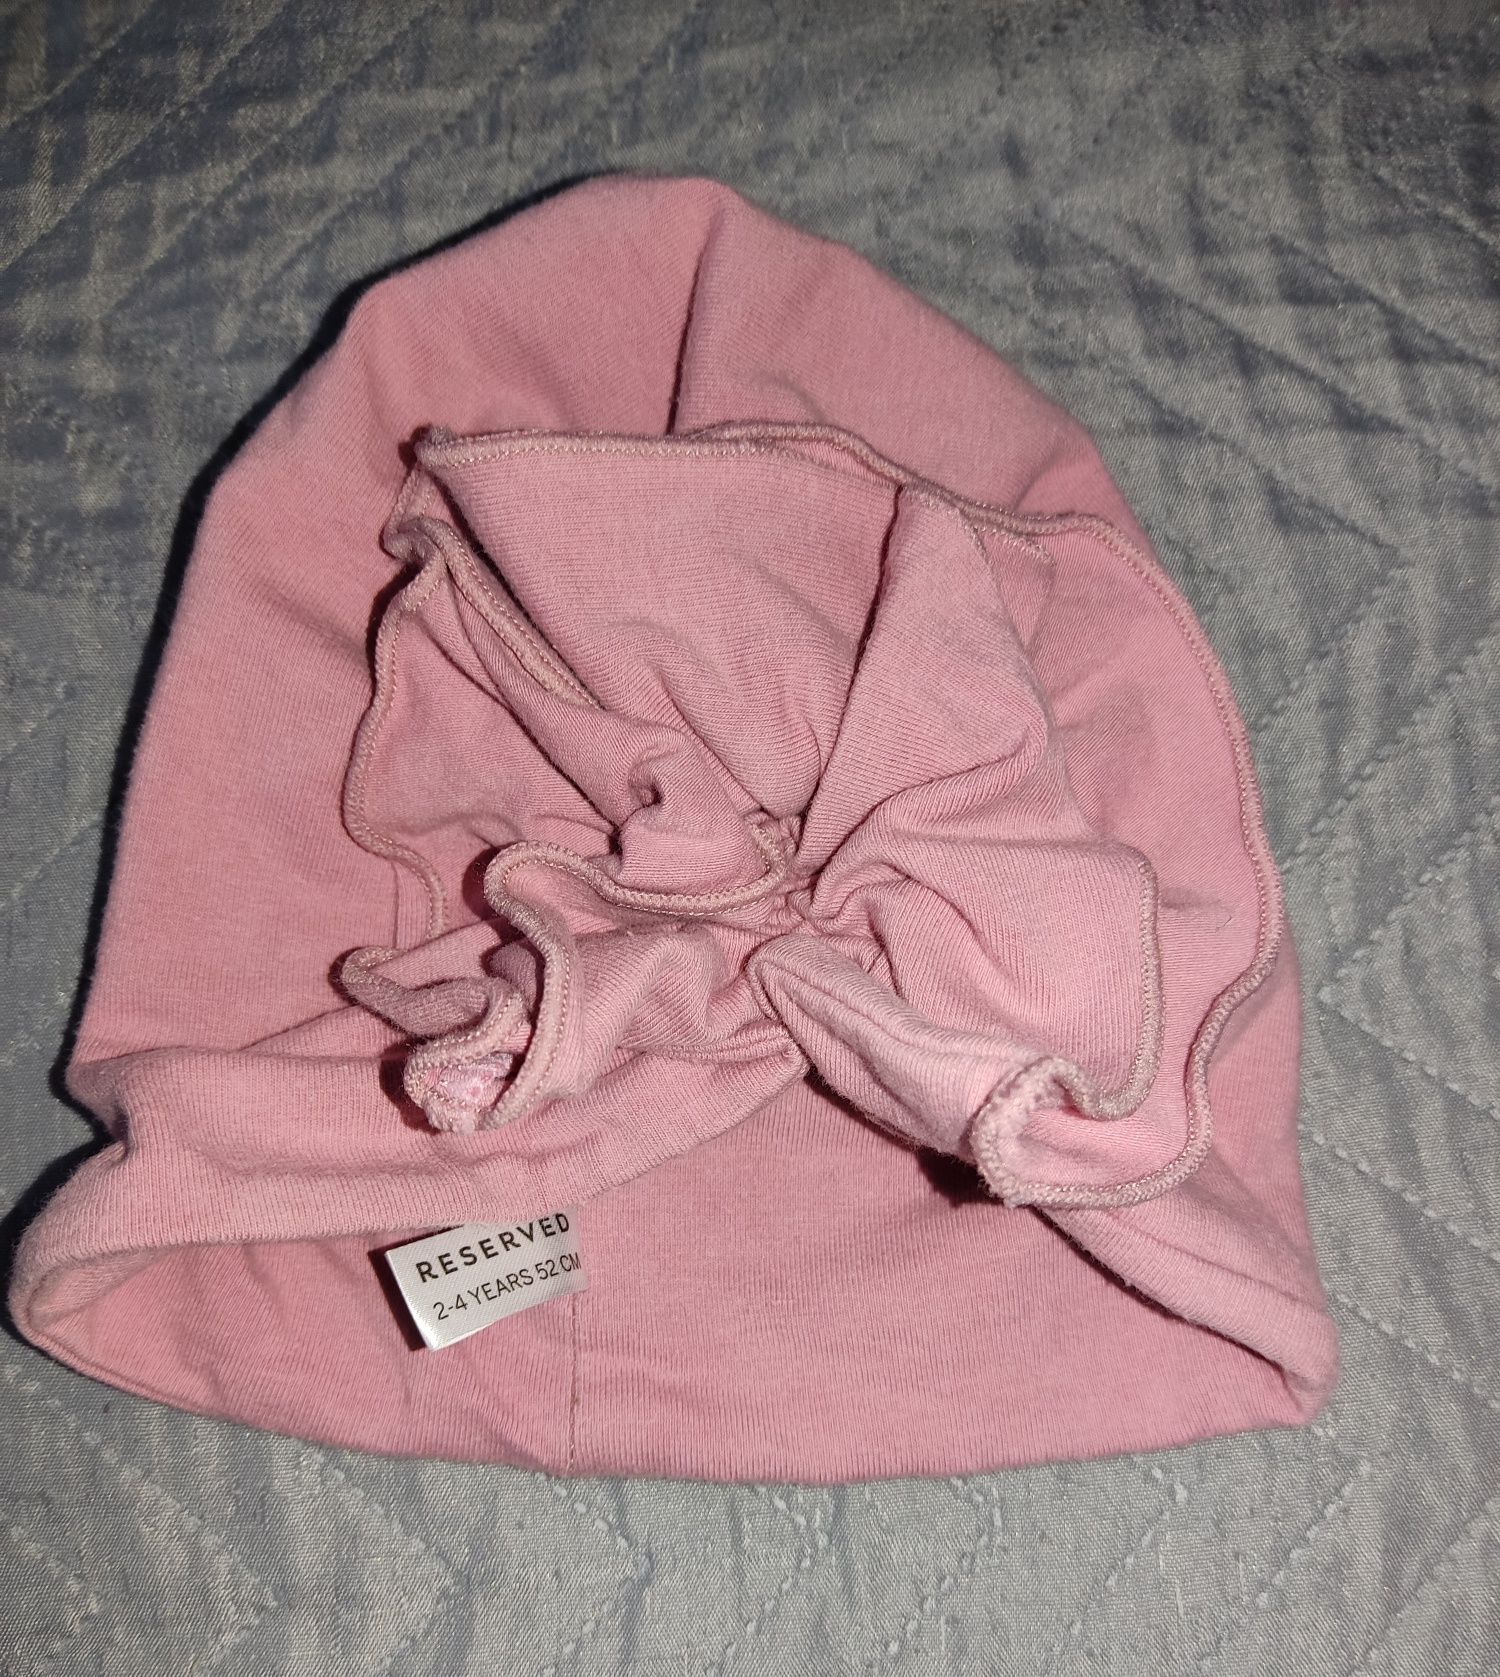 Czapeczka, czapka wiosenna i rękawiczki, Reserved, 2-4 lat